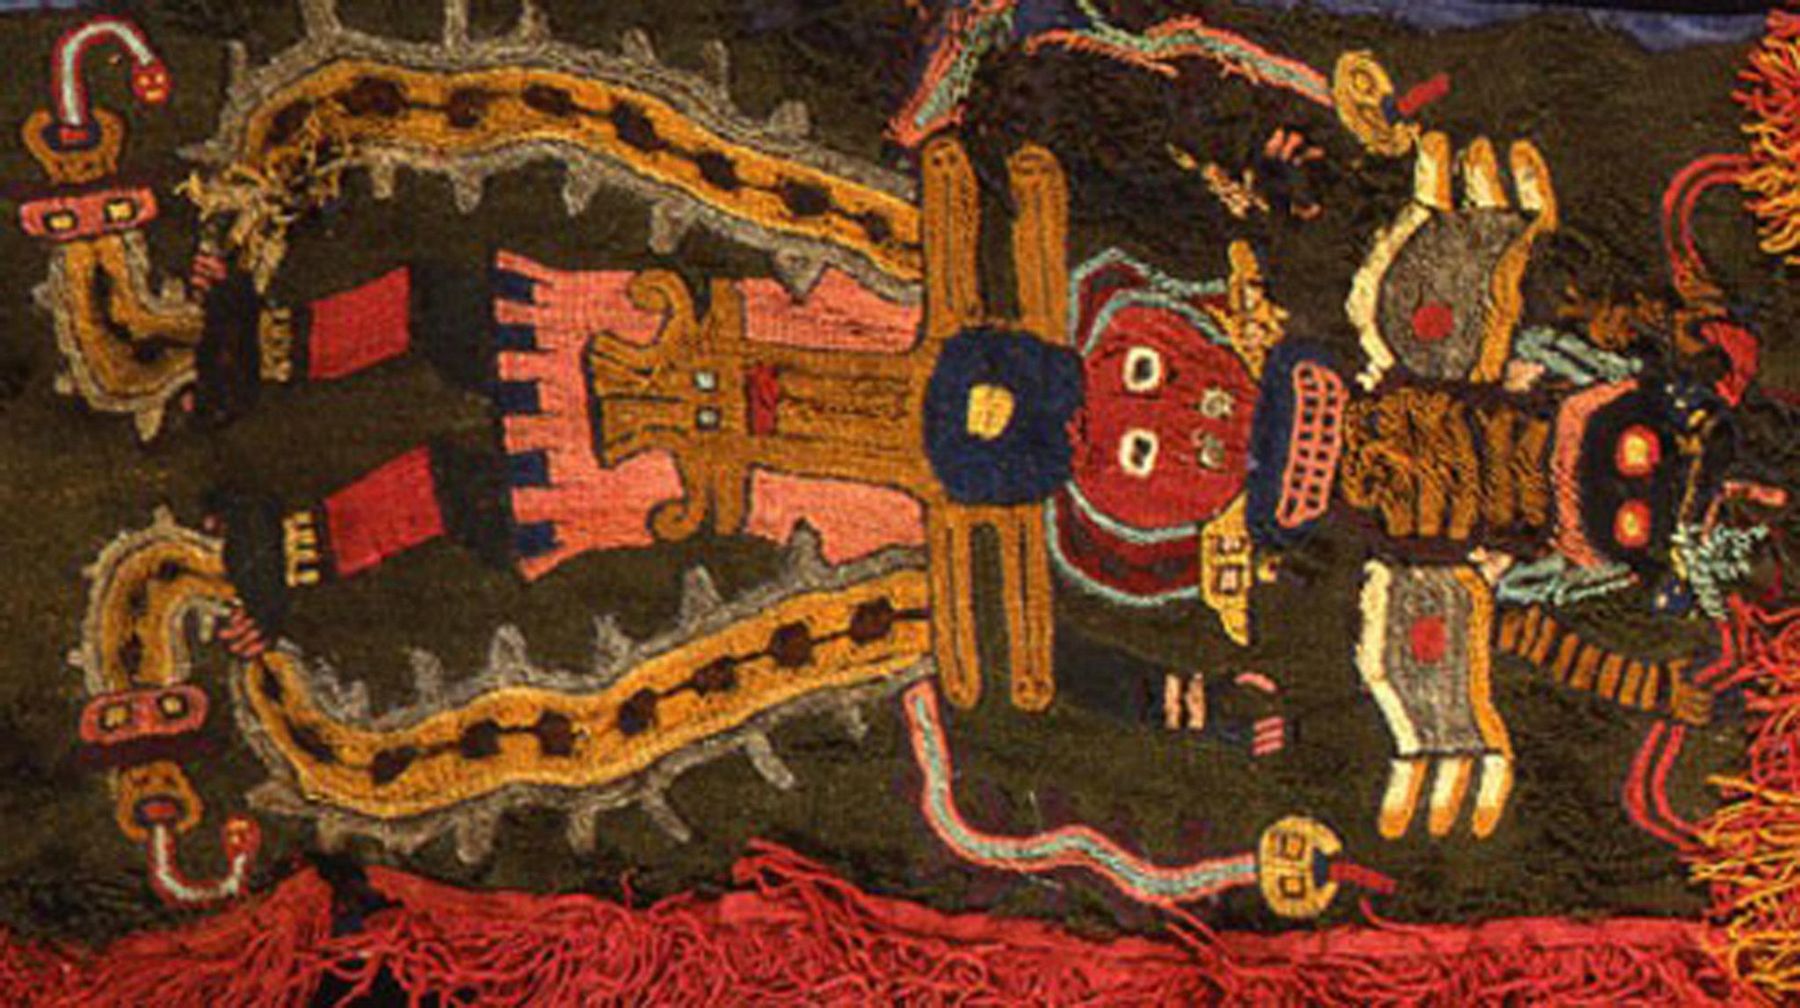 Ancient Paracas textile